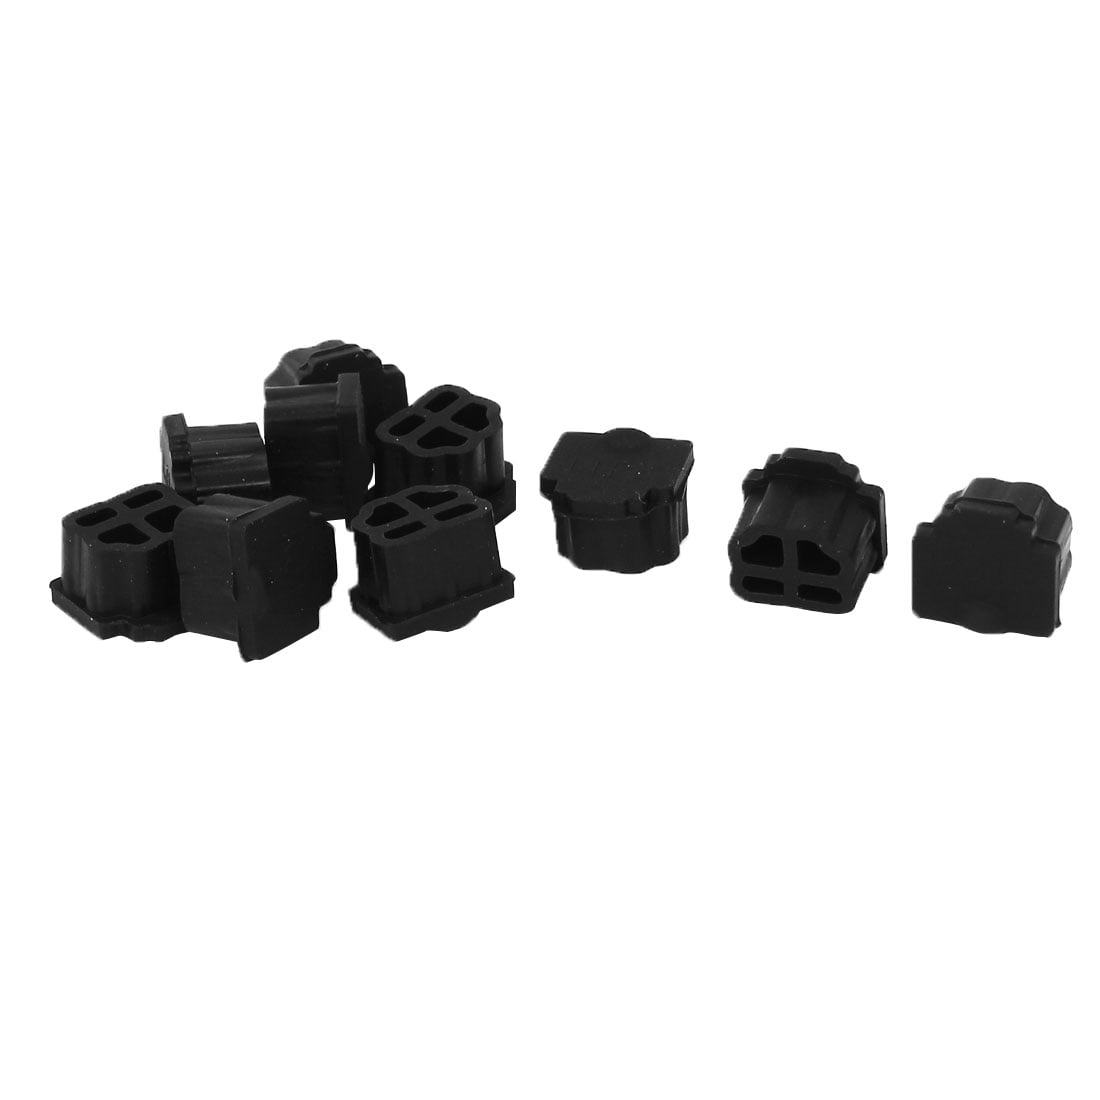 uxcell 10 Pcs Silicone e-SATA Port Anti Dust Cover Protector Black